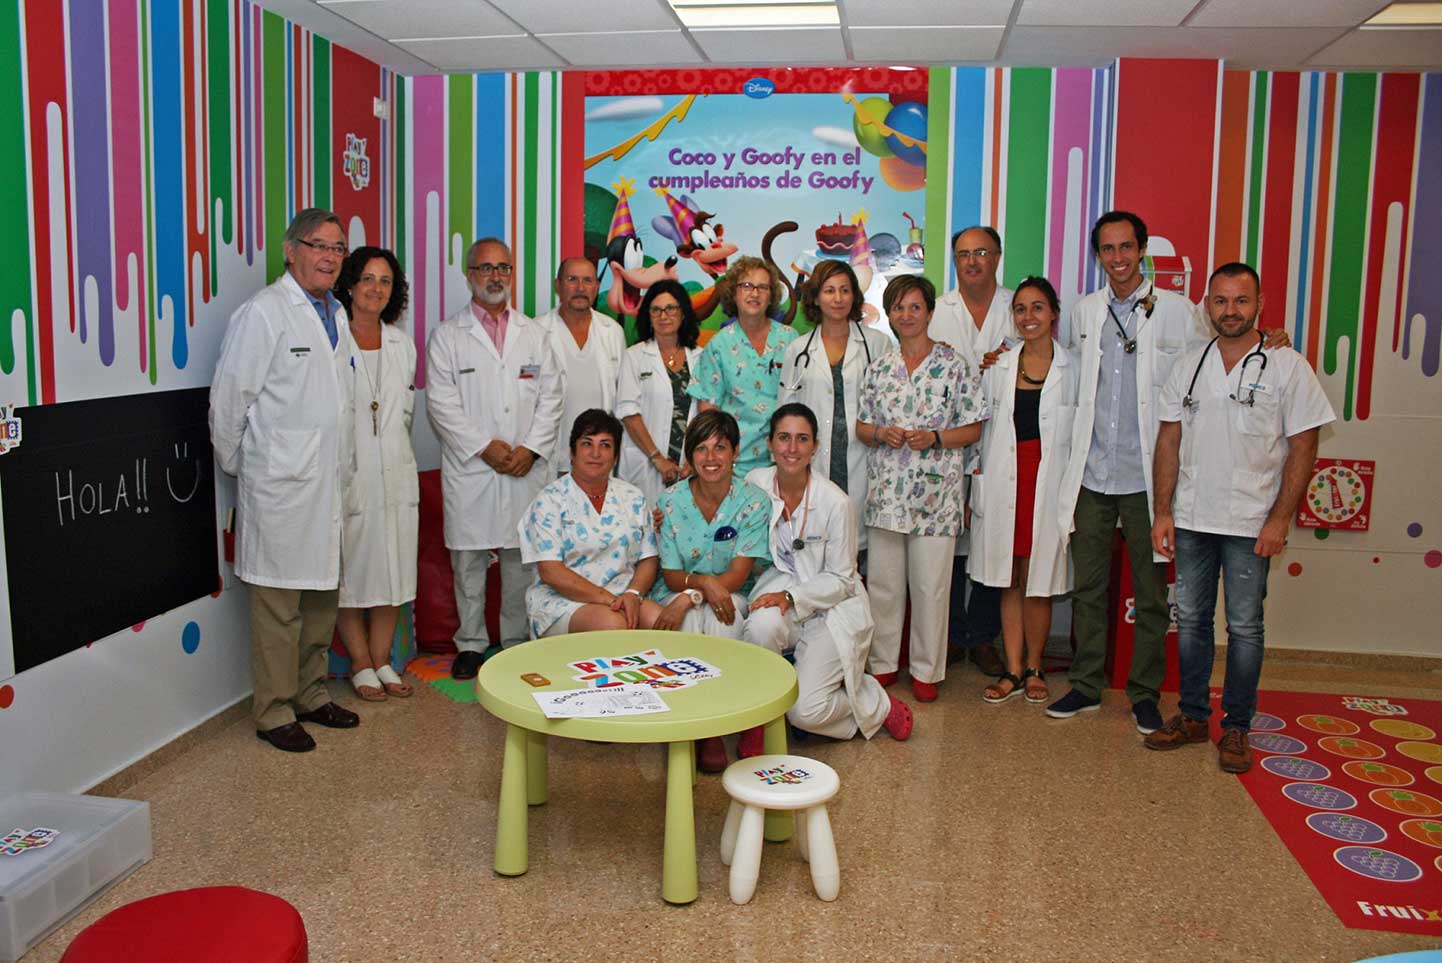 Los hospitales Doctor Peset, Clí­nico y Sant Joan disponen de una zona de juego educativa para niños con diabetes